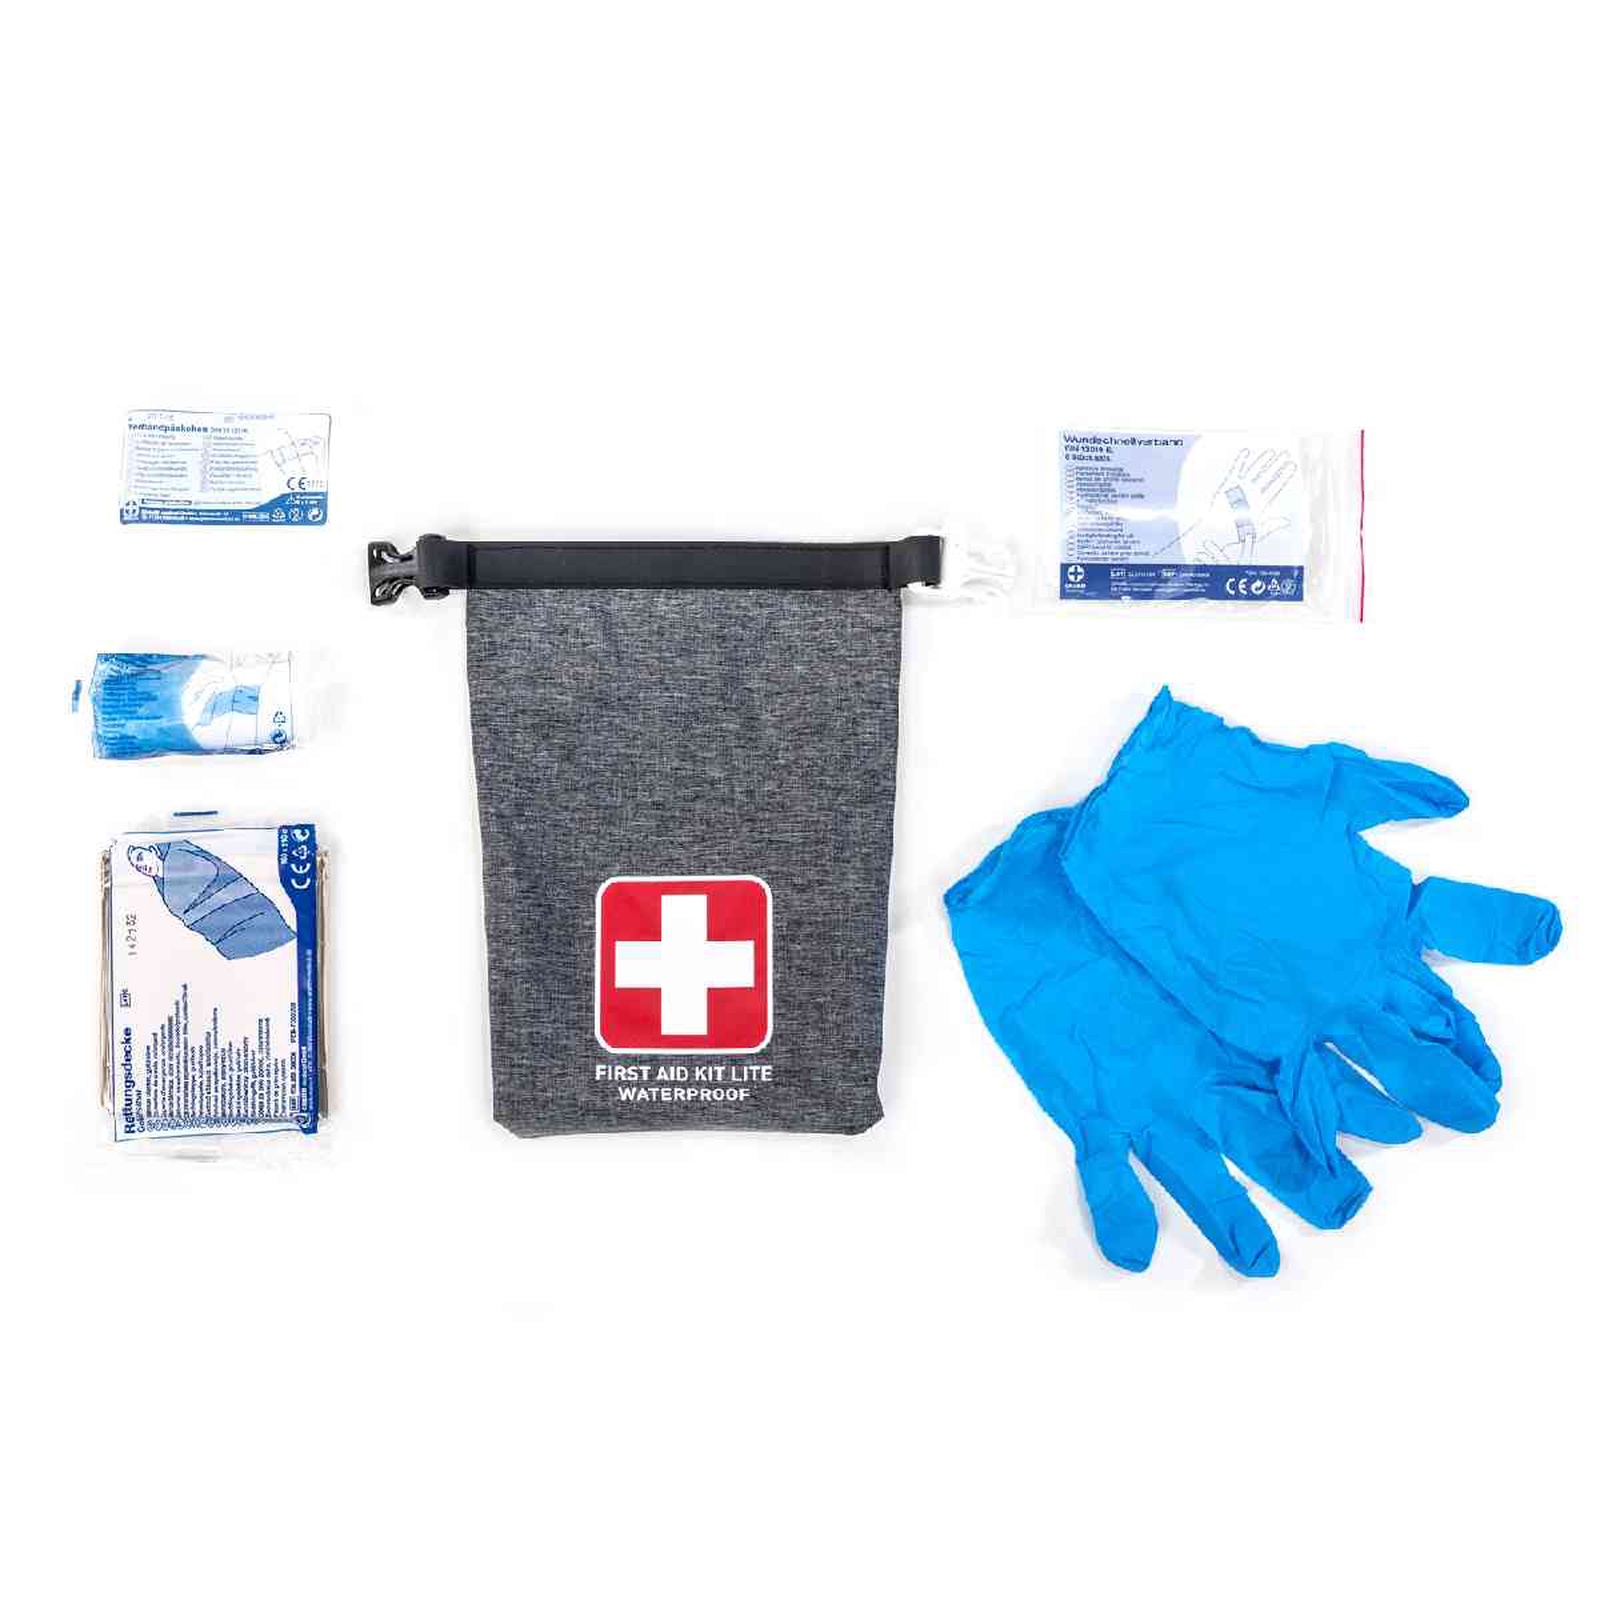 First Aid Kit Lite 1L